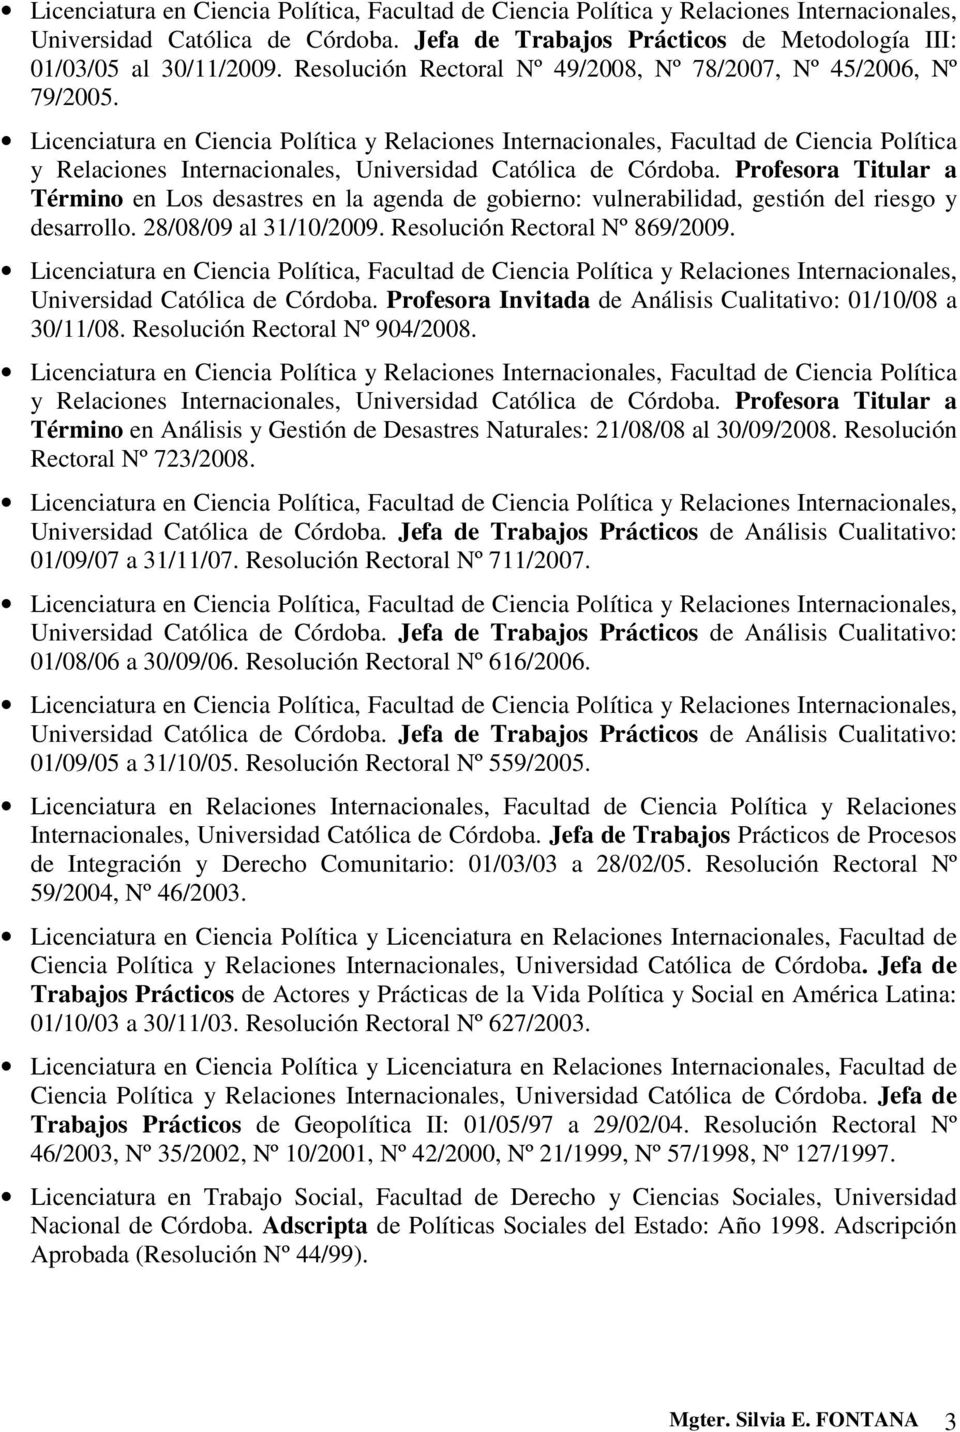 Licenciatura en Ciencia Política y Relaciones Internacionales, Facultad de Ciencia Política y Relaciones Internacionales, Universidad Católica de Córdoba.